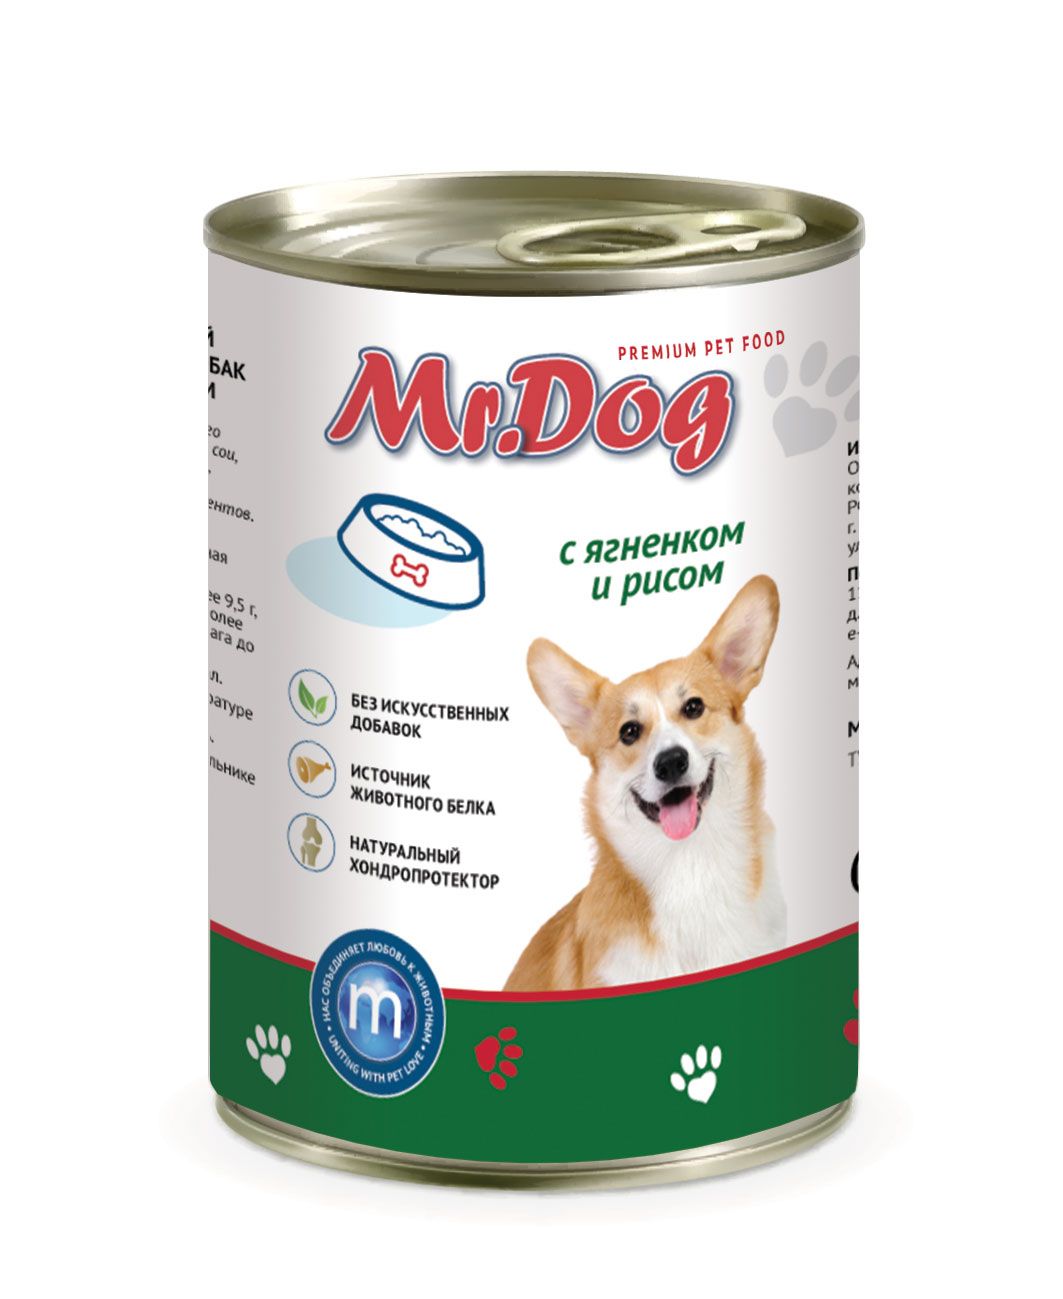 Mr.Dog Ягнёнок/Рис консервы для собак 410 гр 1